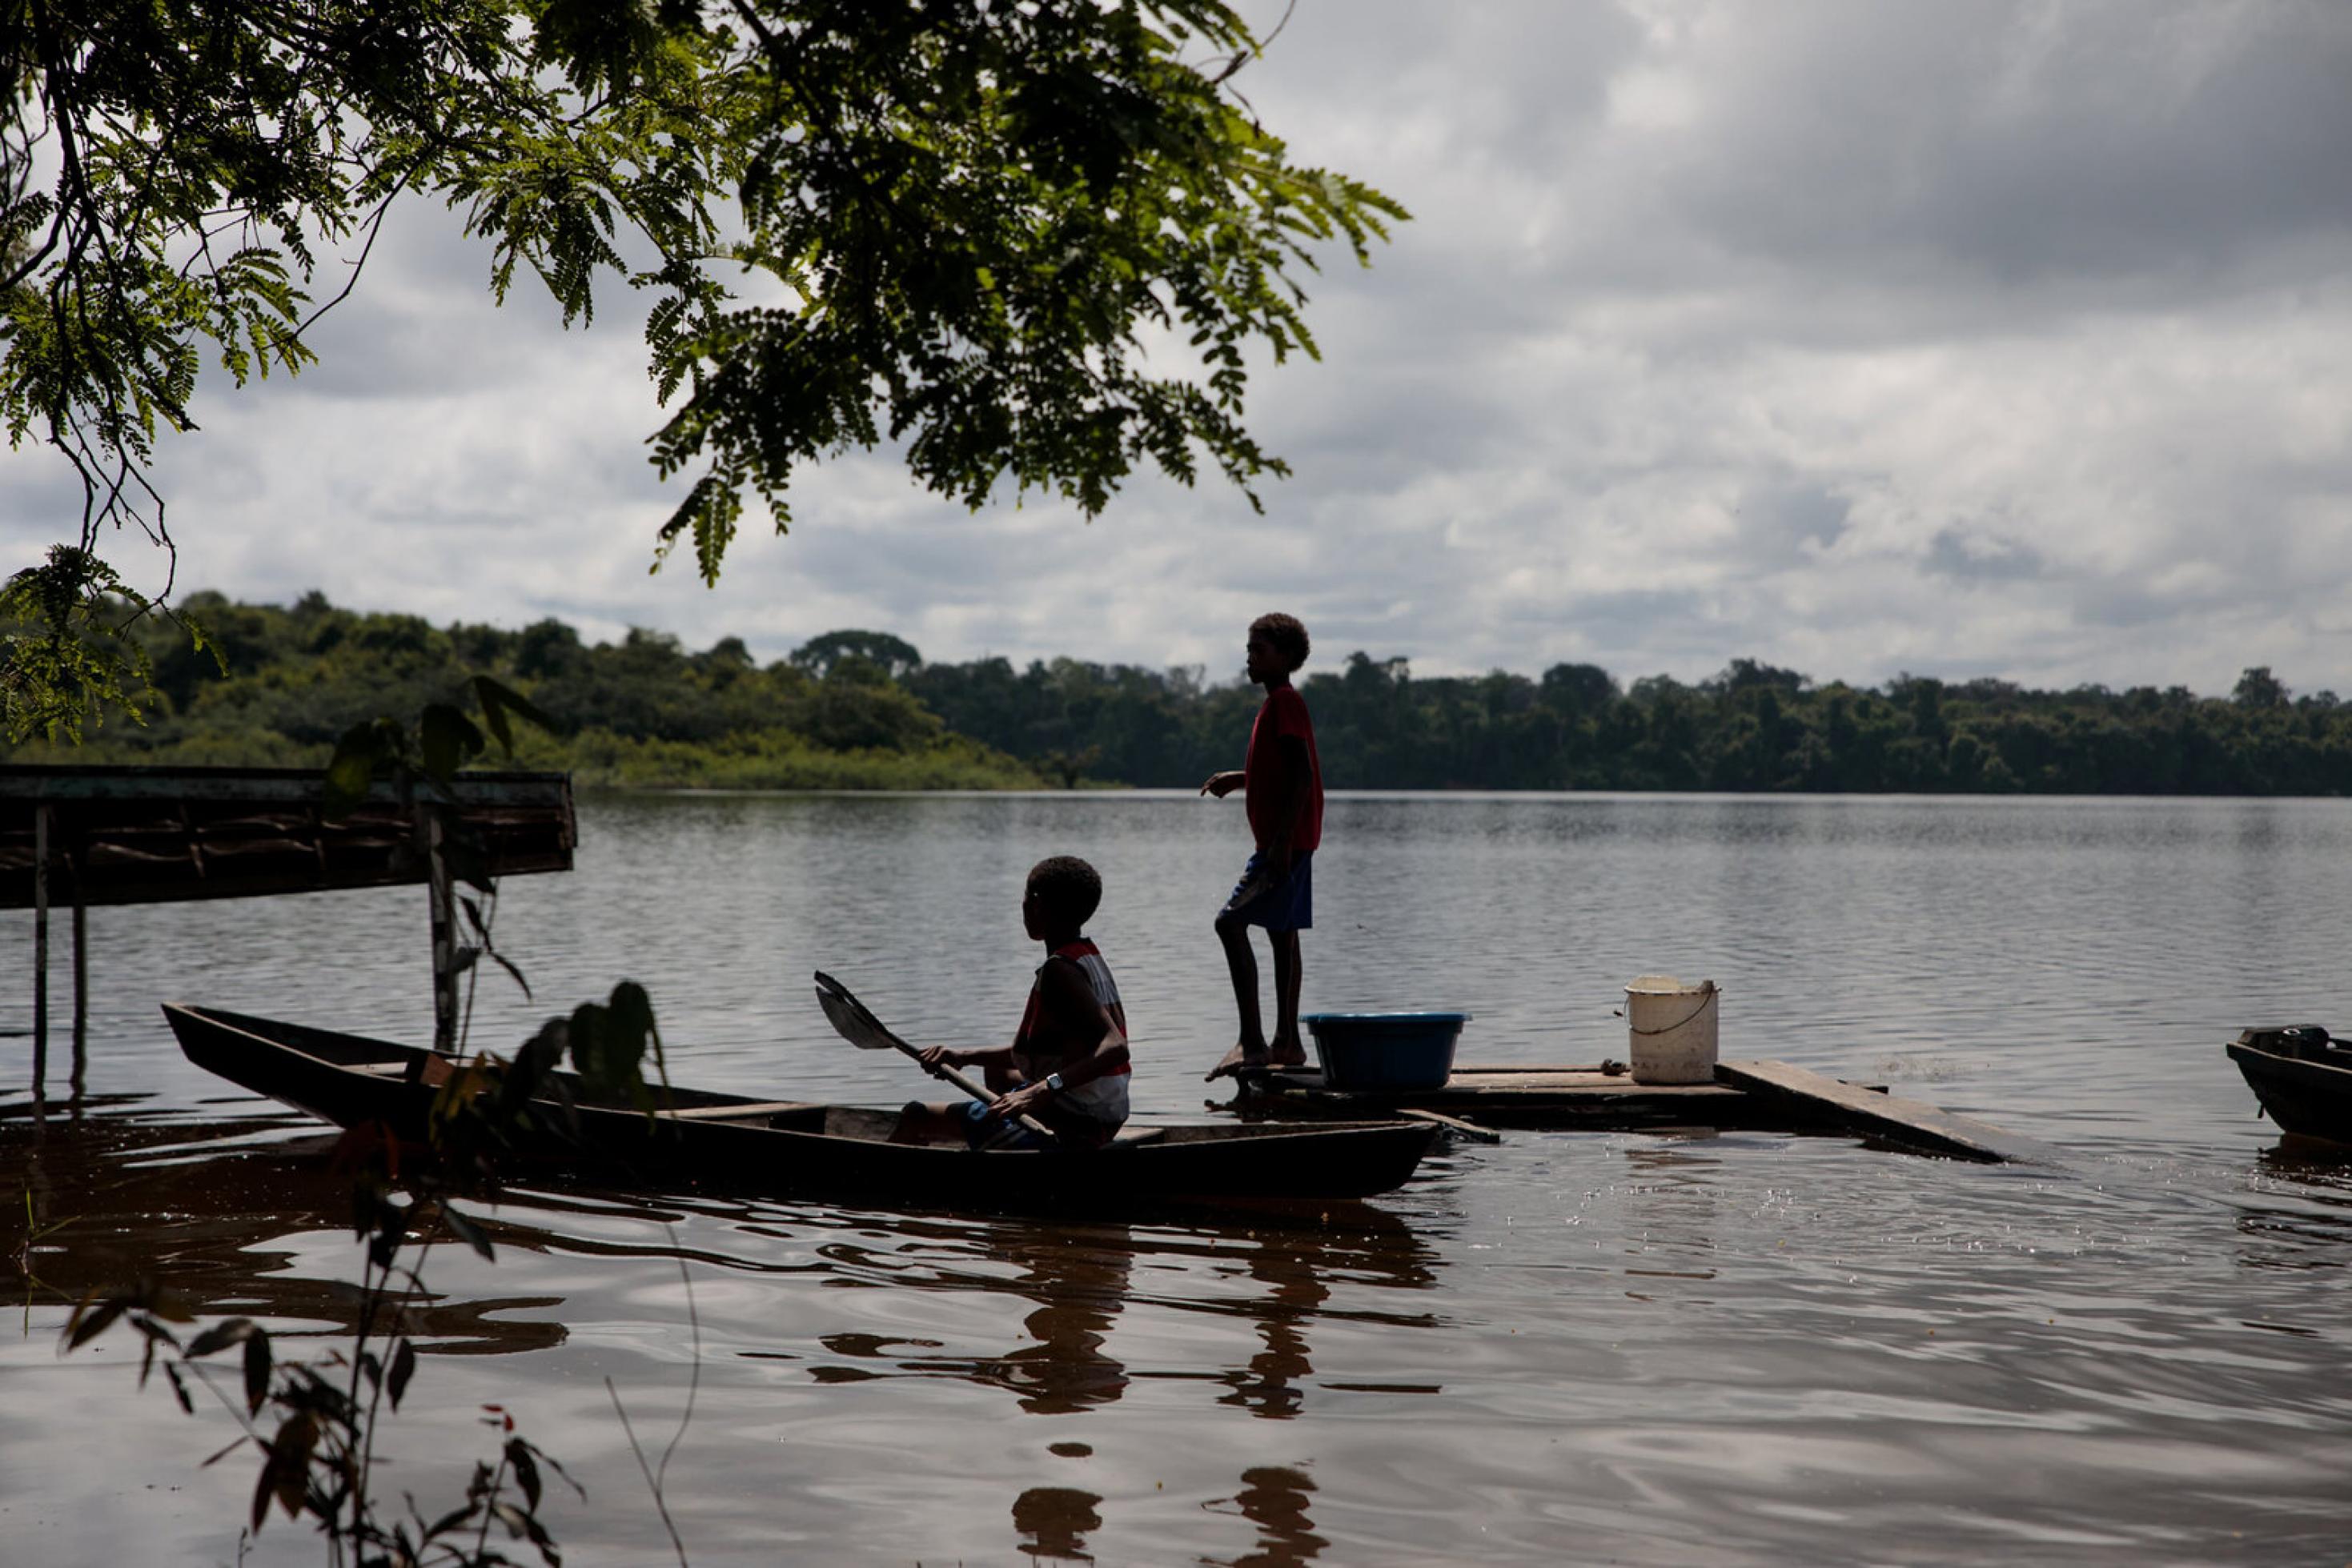 Eine Totale zeigt, wie zwei Kinder in einem schmalen Boot angeln. Sie befinden sich am Fluss Trombetas.